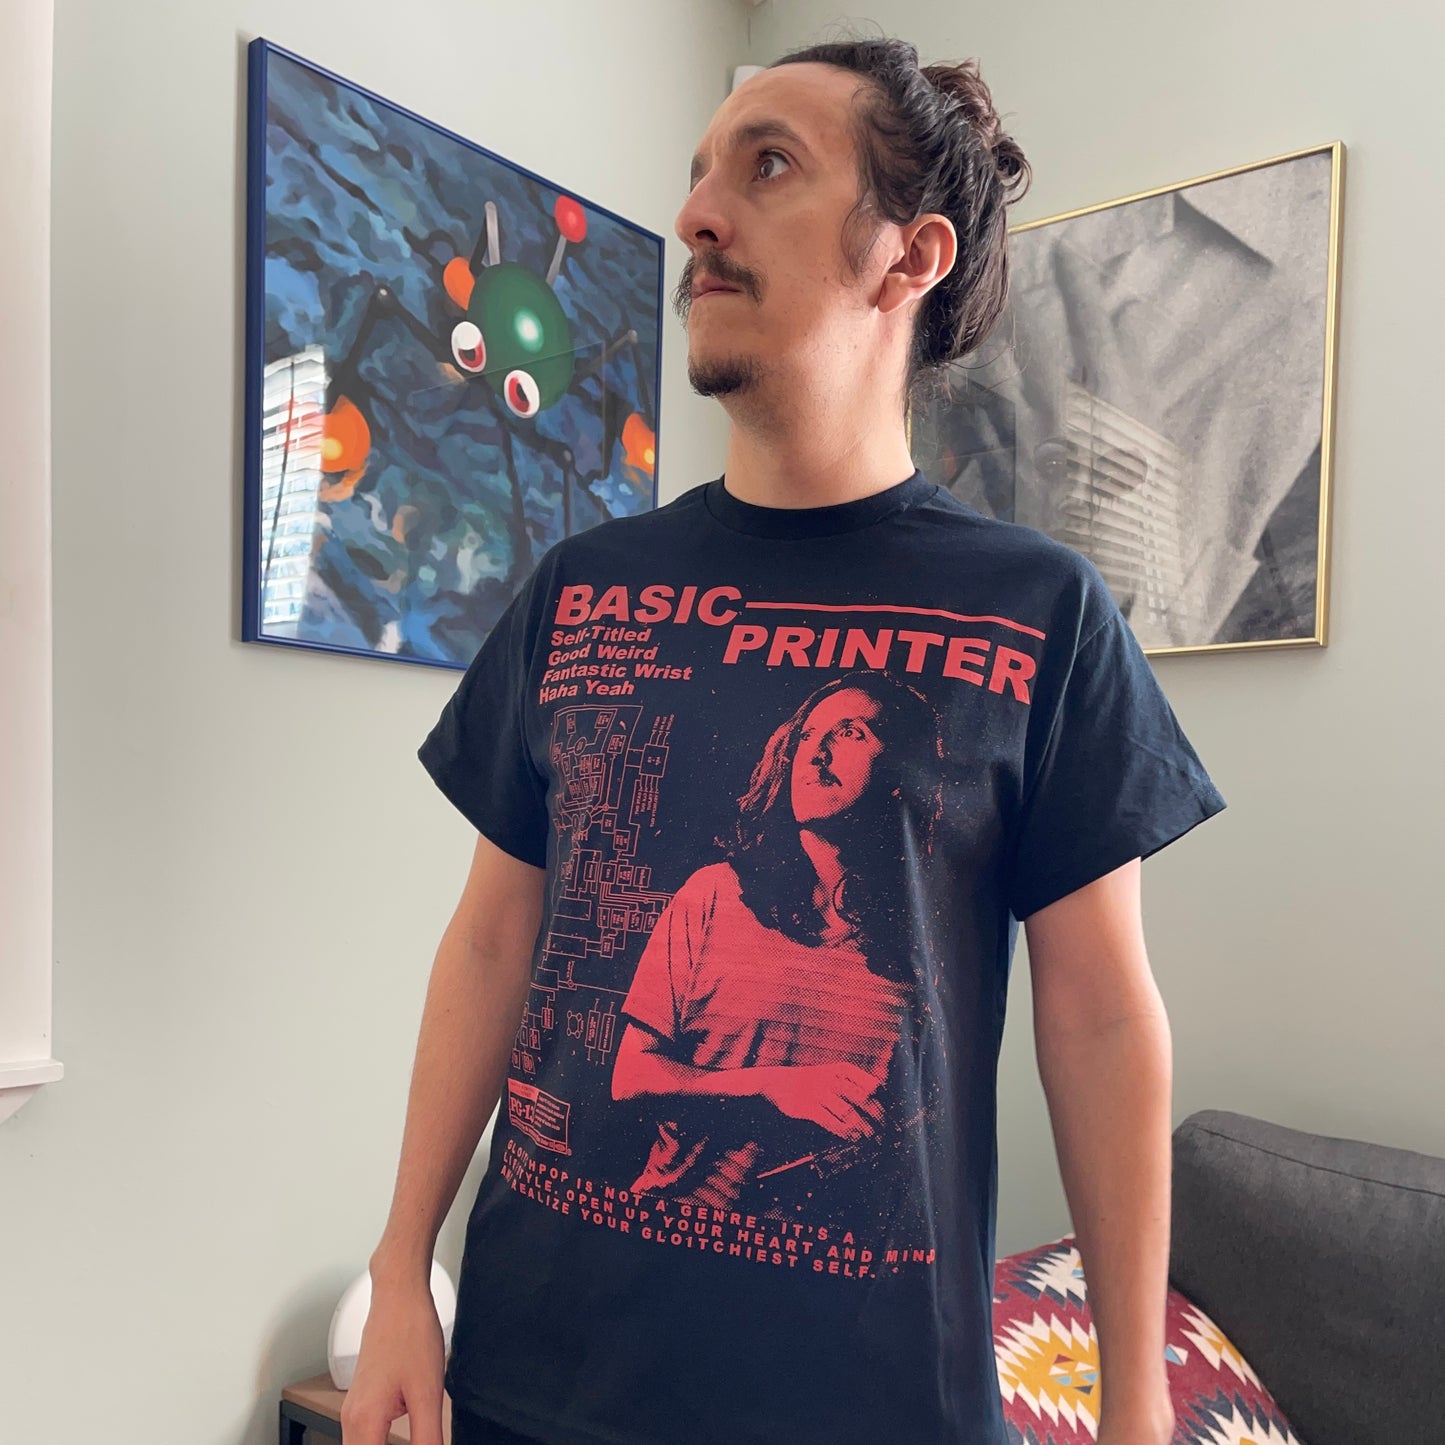 Basic Printer: The Movie Shirt